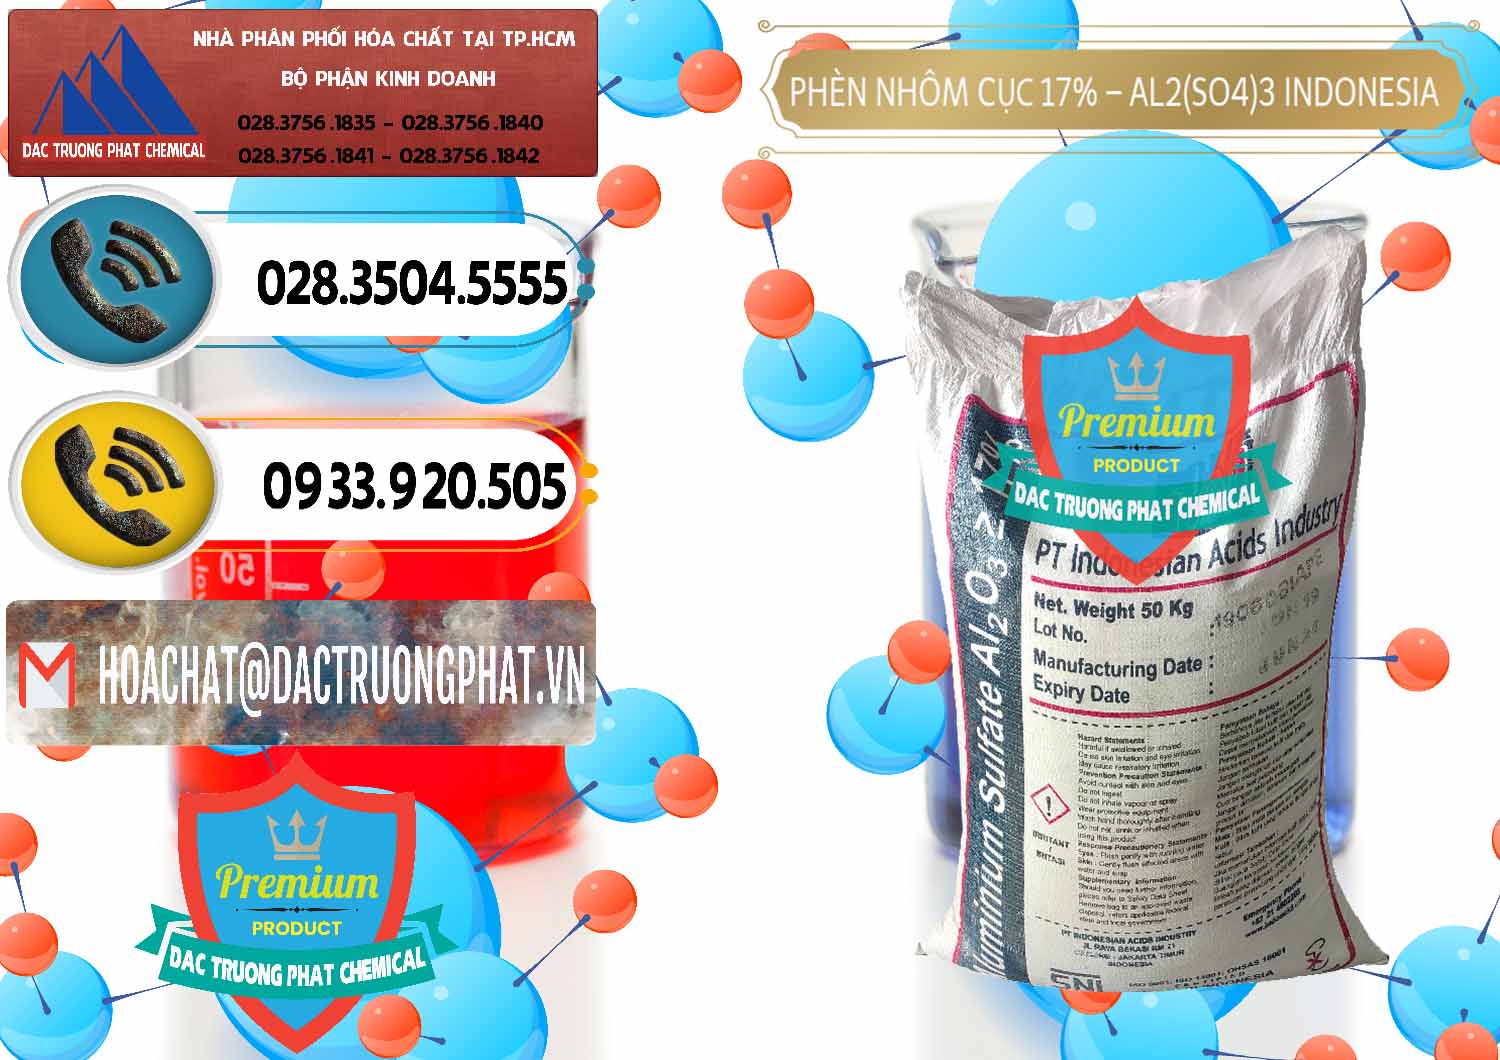 Nơi bán - cung ứng Phèn Nhôm Cục - Al2(SO4)3 17% bao 50kg Indonesia - 0113 - Công ty chuyên nhập khẩu ( phân phối ) hóa chất tại TP.HCM - hoachatdetnhuom.vn